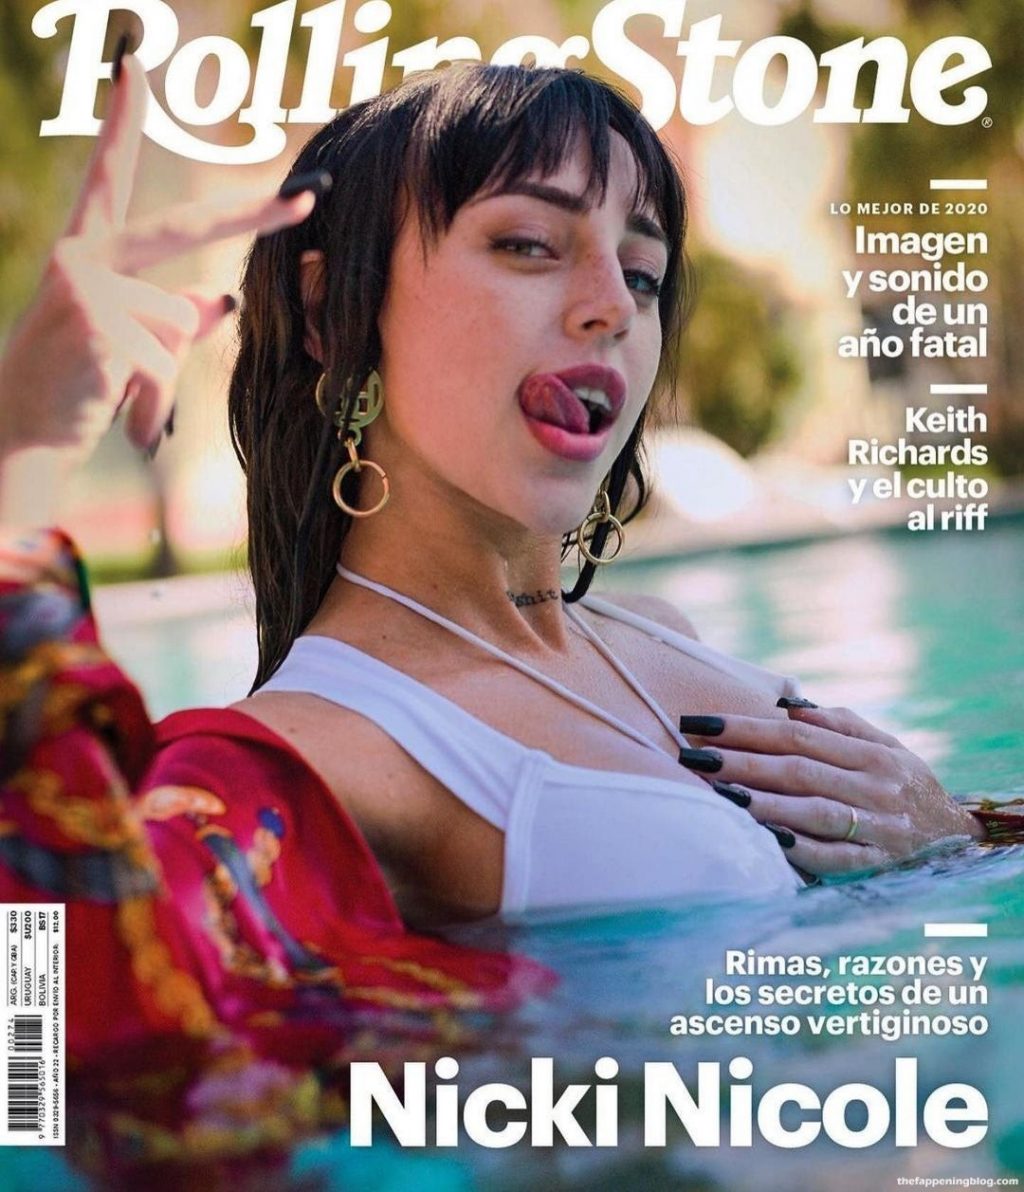 Nicki Nicole Sexy Collection (26 Photos + Videos)